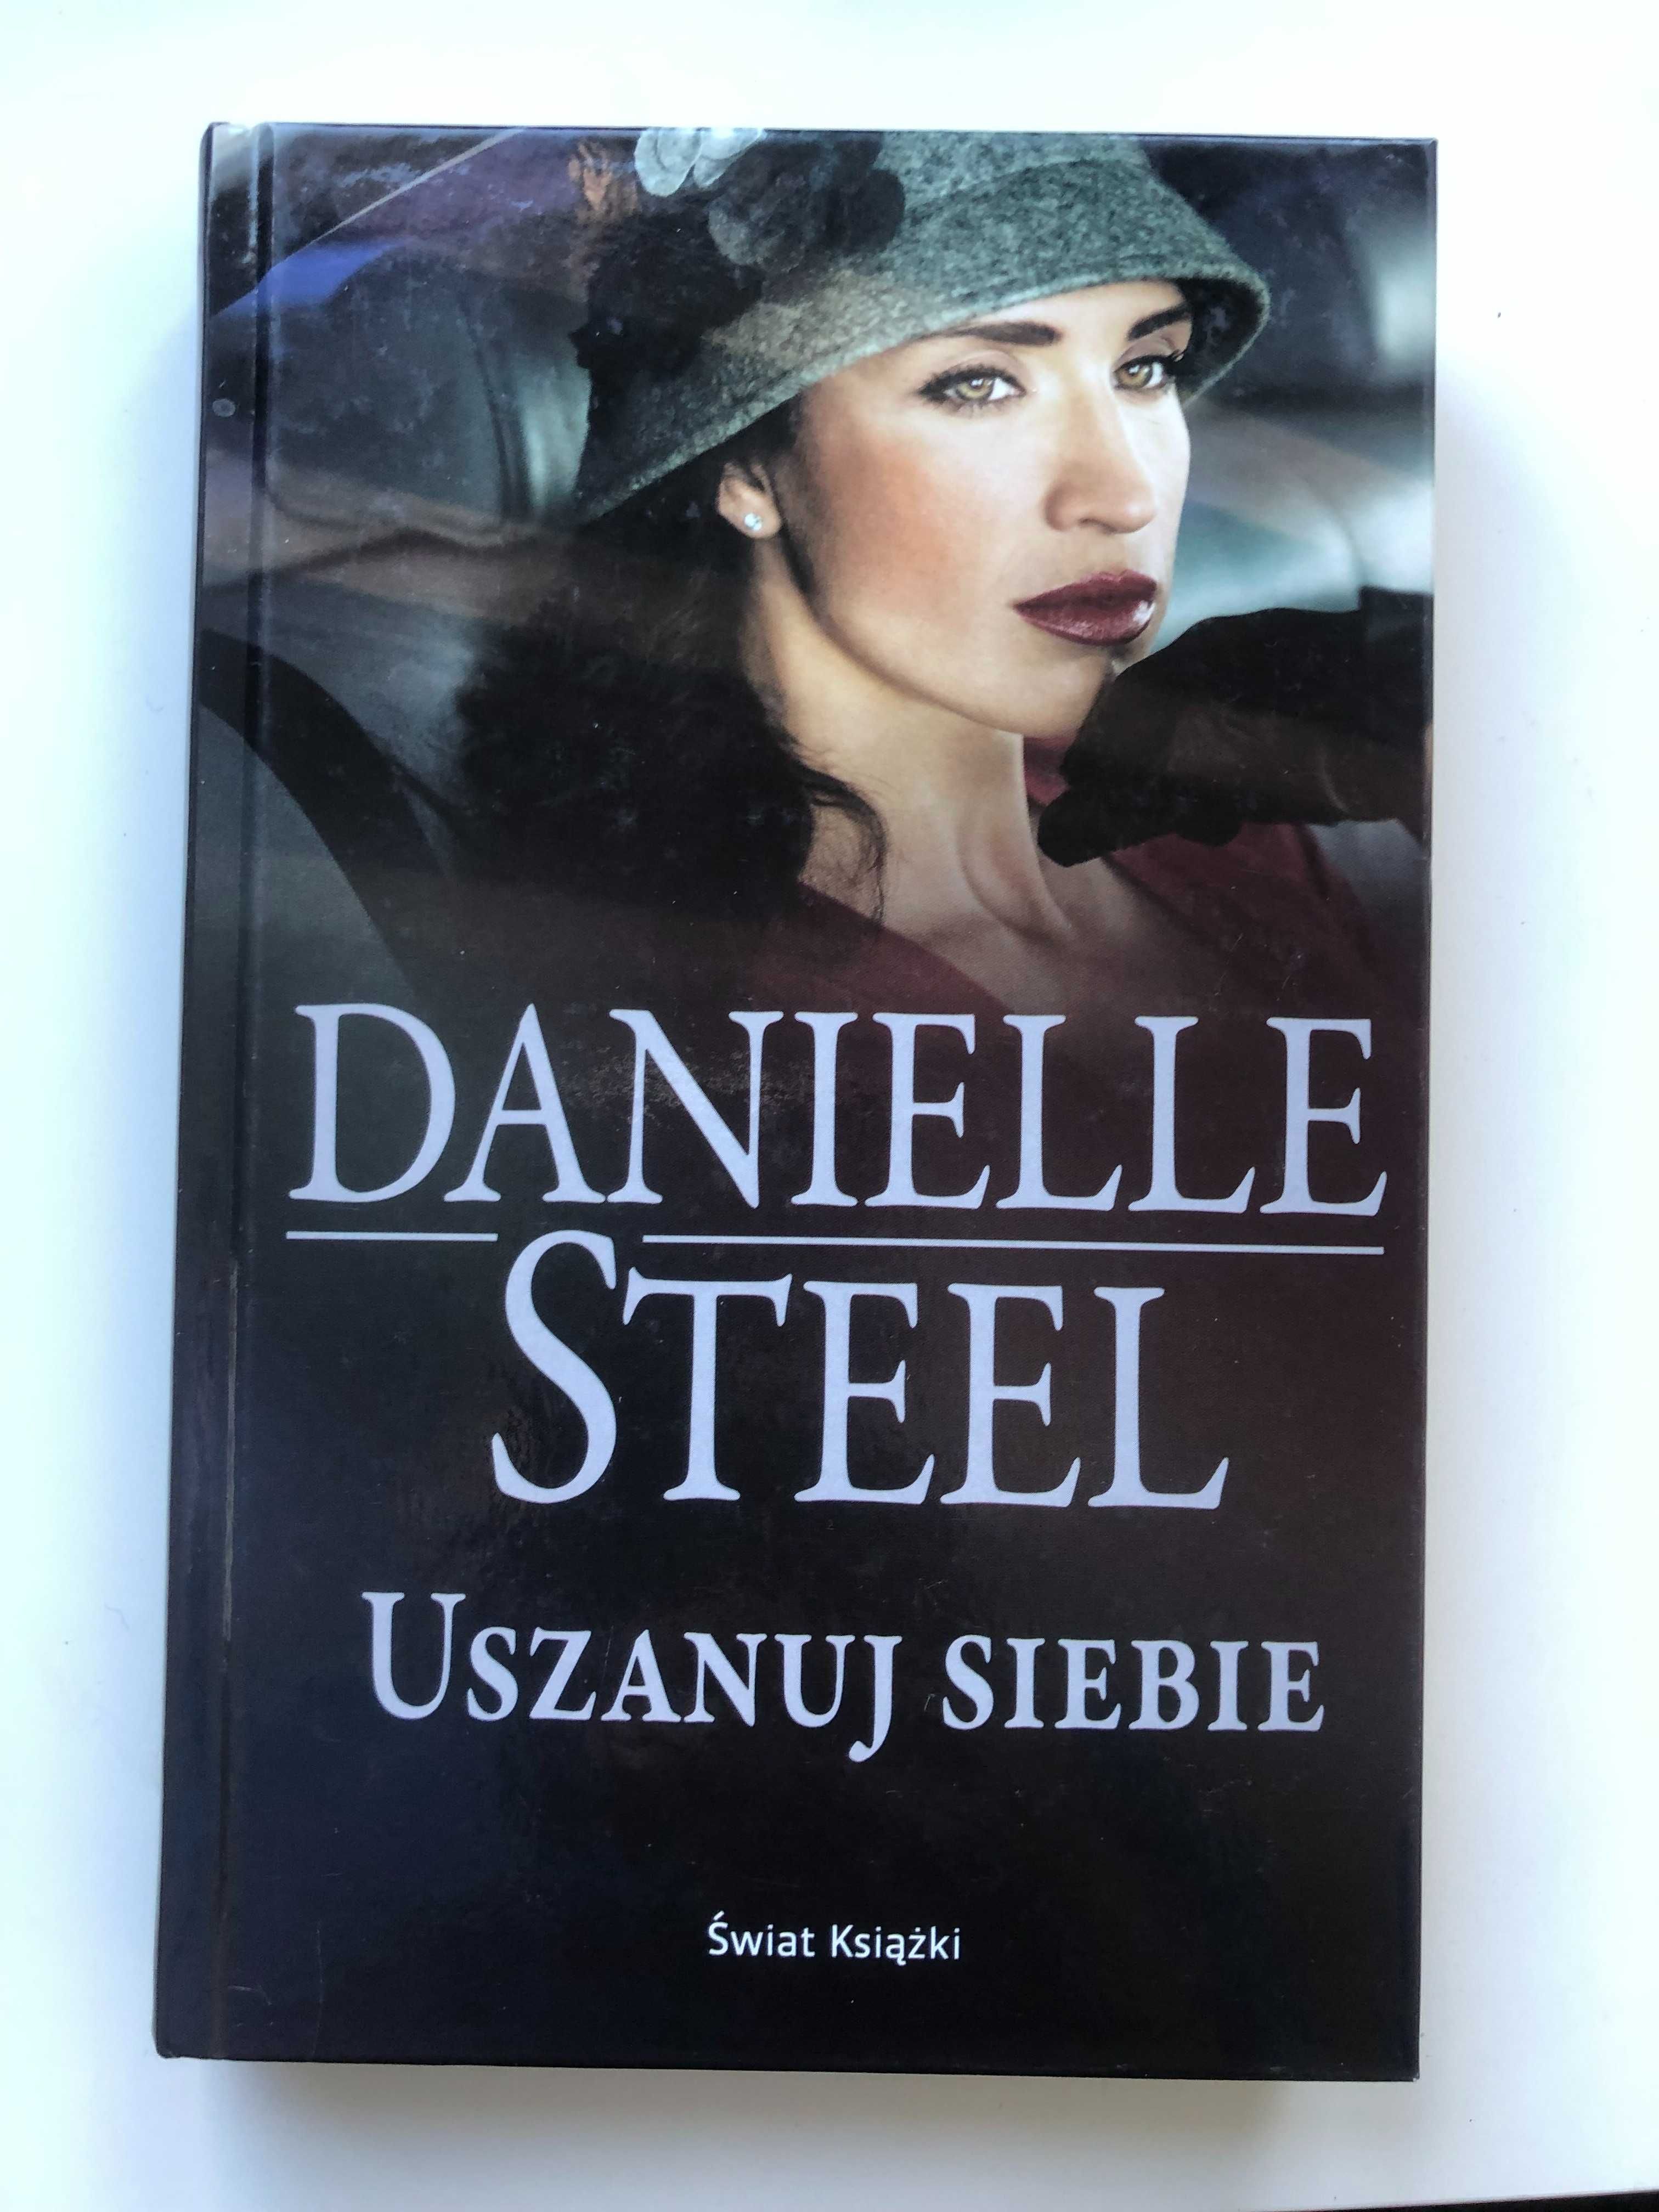 Danielle Steel Pakiet 5 książek